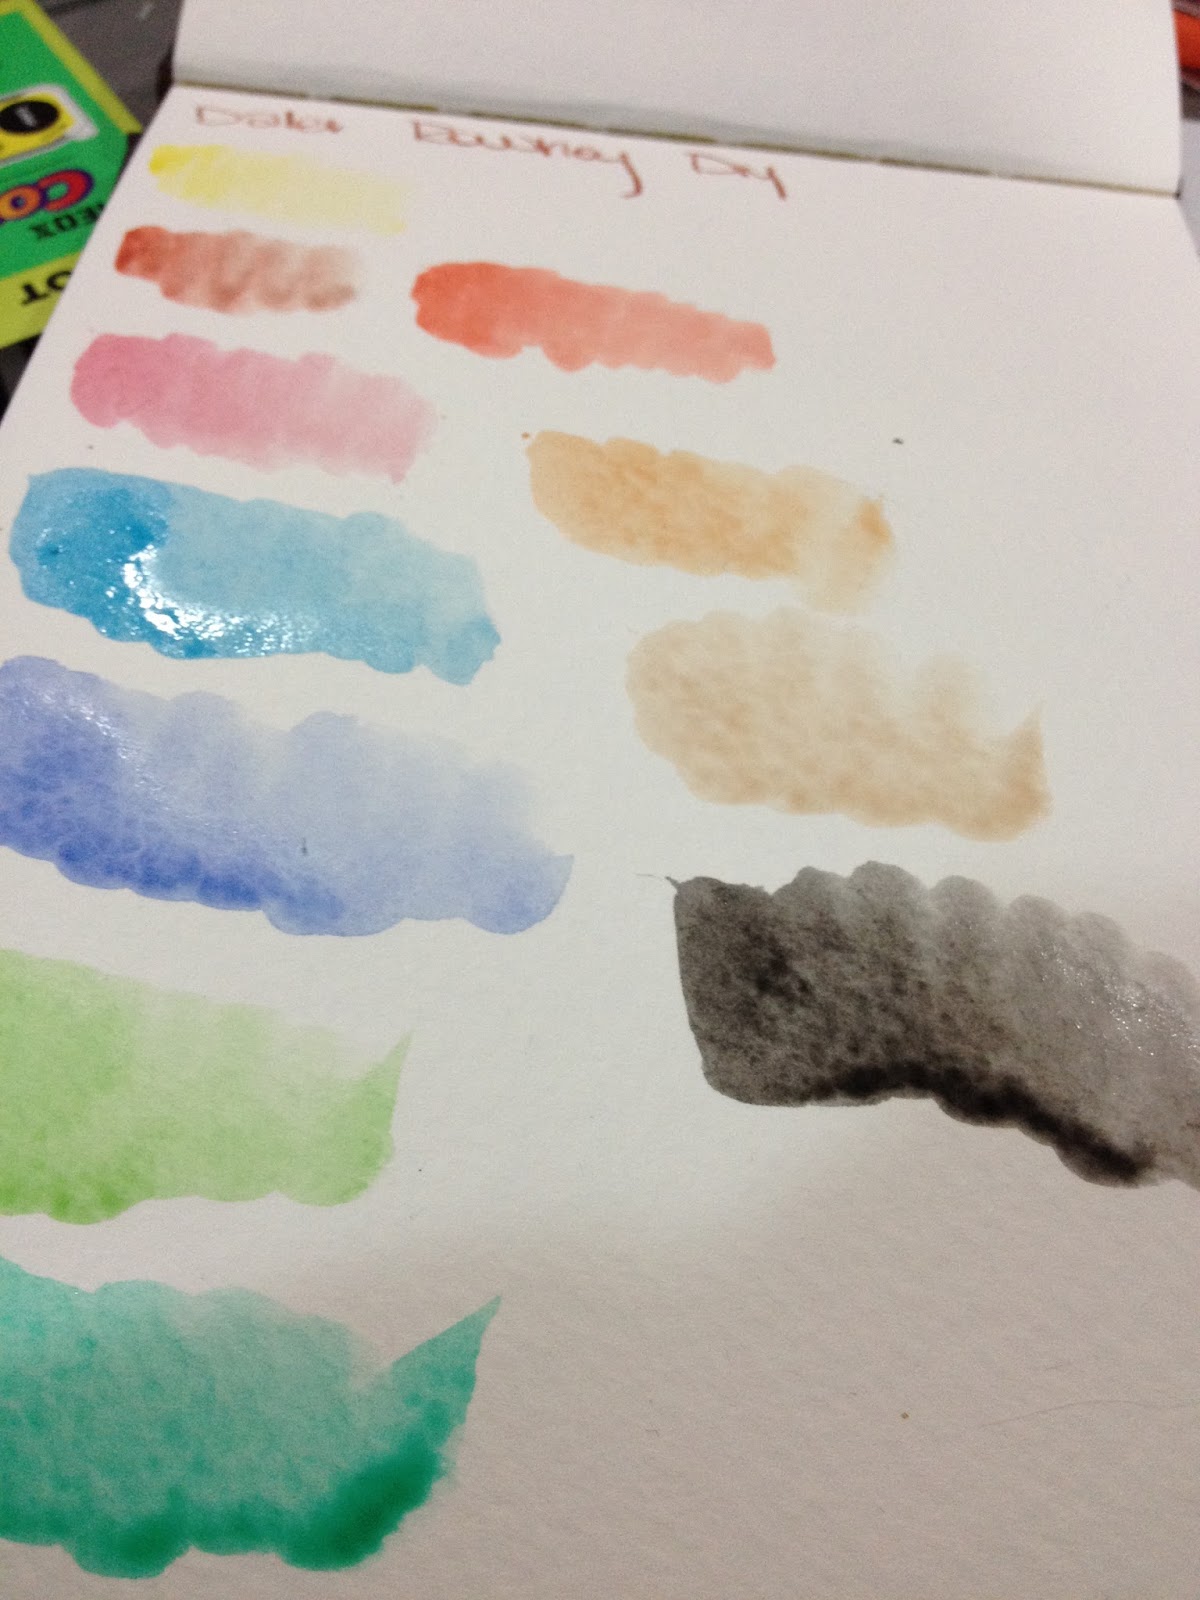 Daler-Rowney Simply Watercolor Paint Tube Set, 12 ml / 0.4 fl. oz., 24 Piece